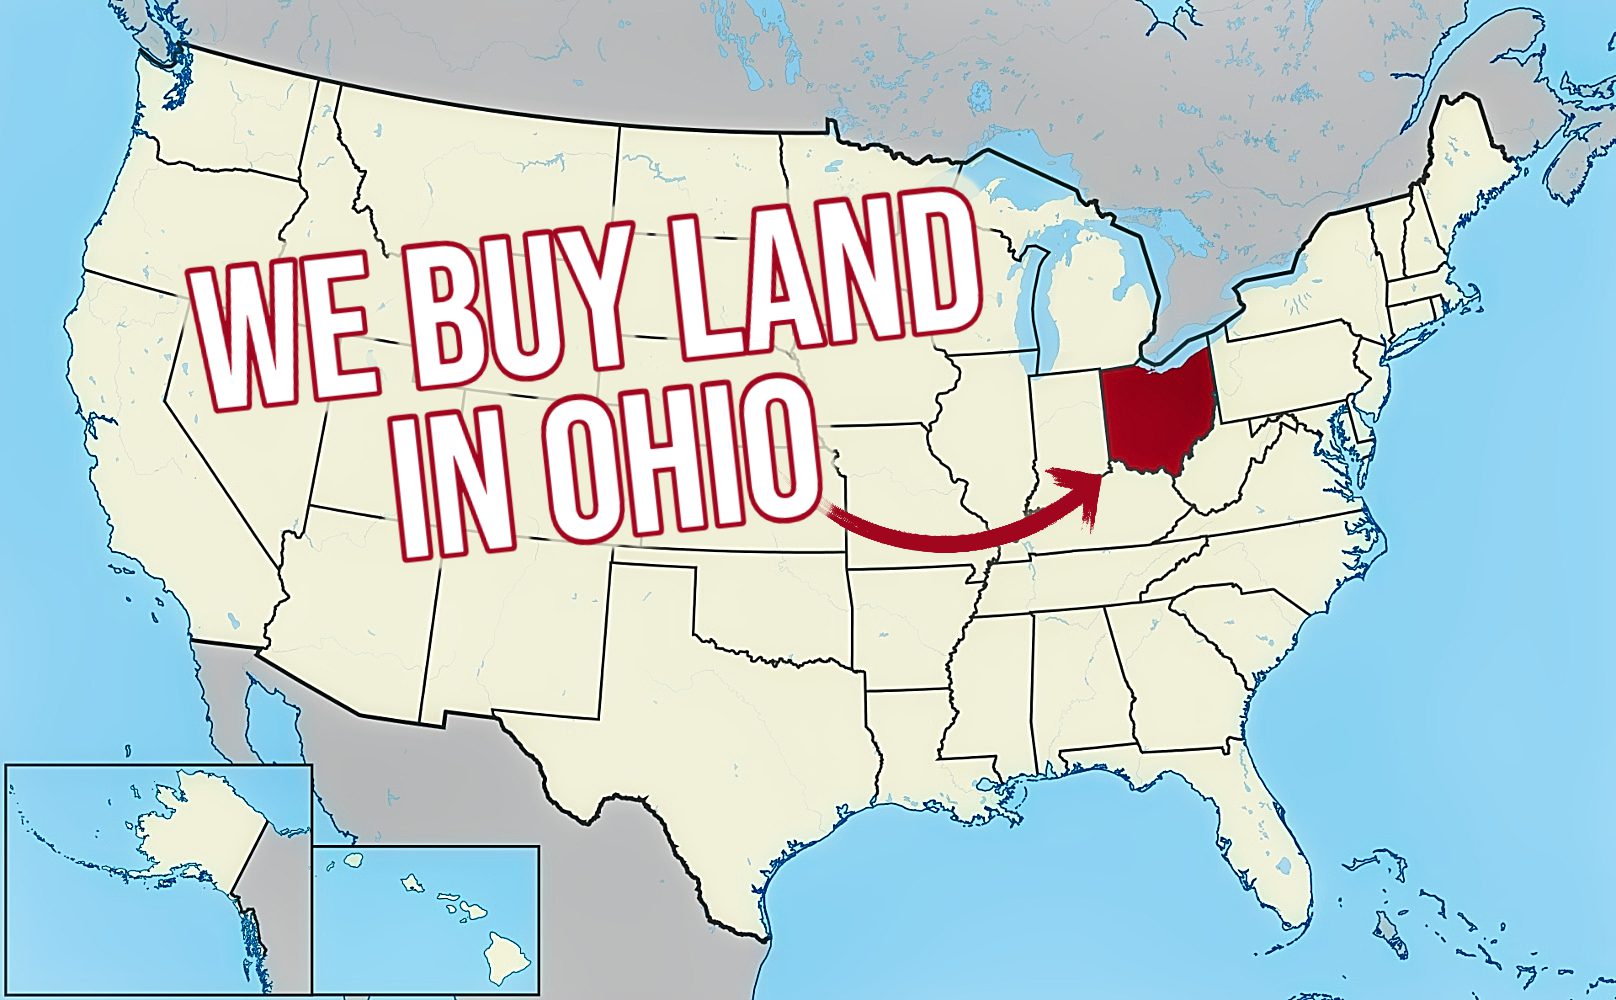 Land Buying Company Ohio